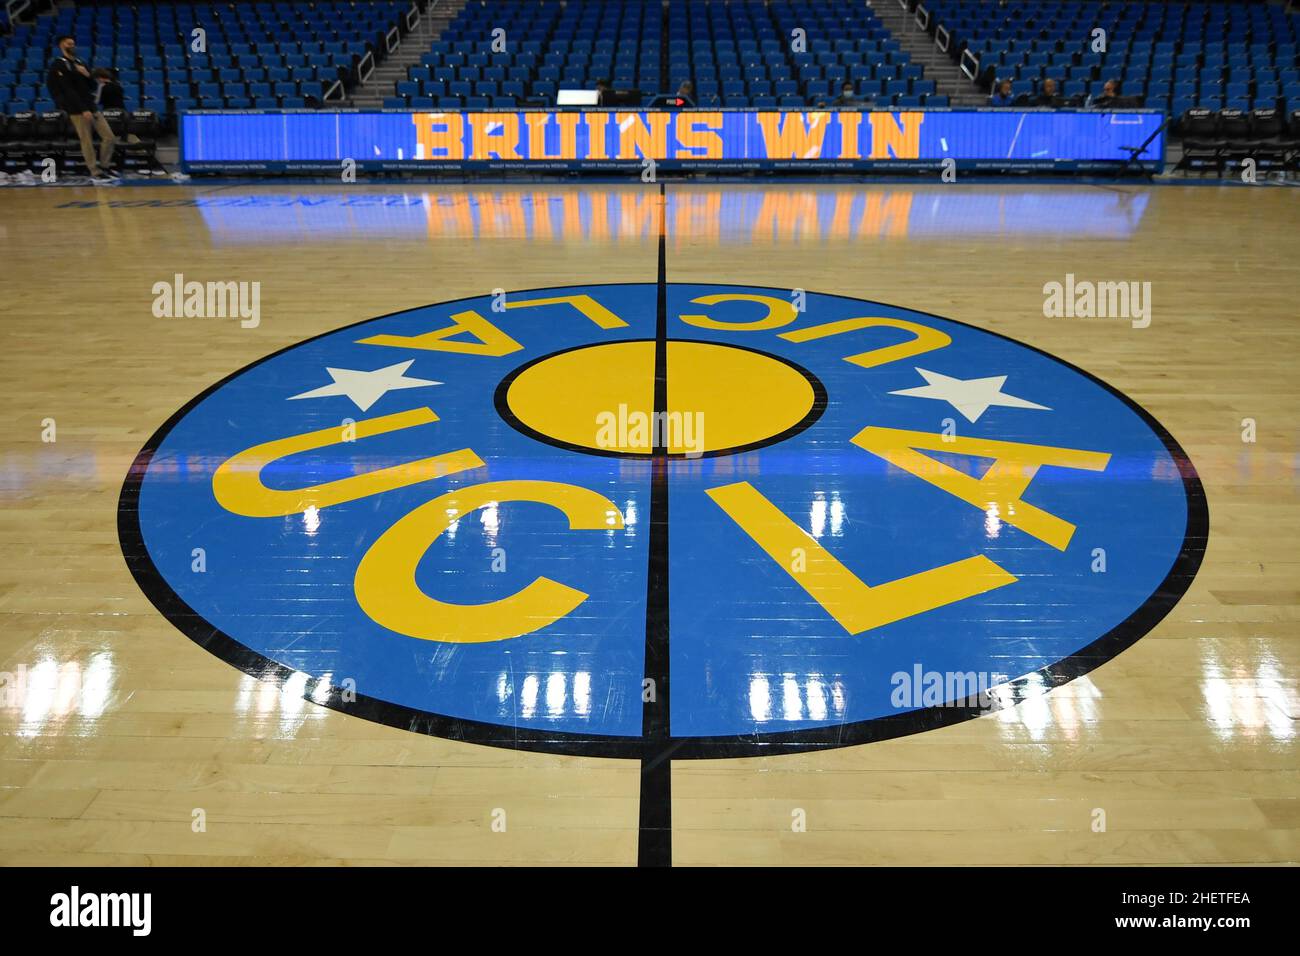 Vue détaillée du logo de l'UCLA en milieu de terrain après un match de basket-ball de la NCAA entre les Bruins de l'UCLA et le long Beach State 49ers, le jeudi 6 janvier 20 Banque D'Images